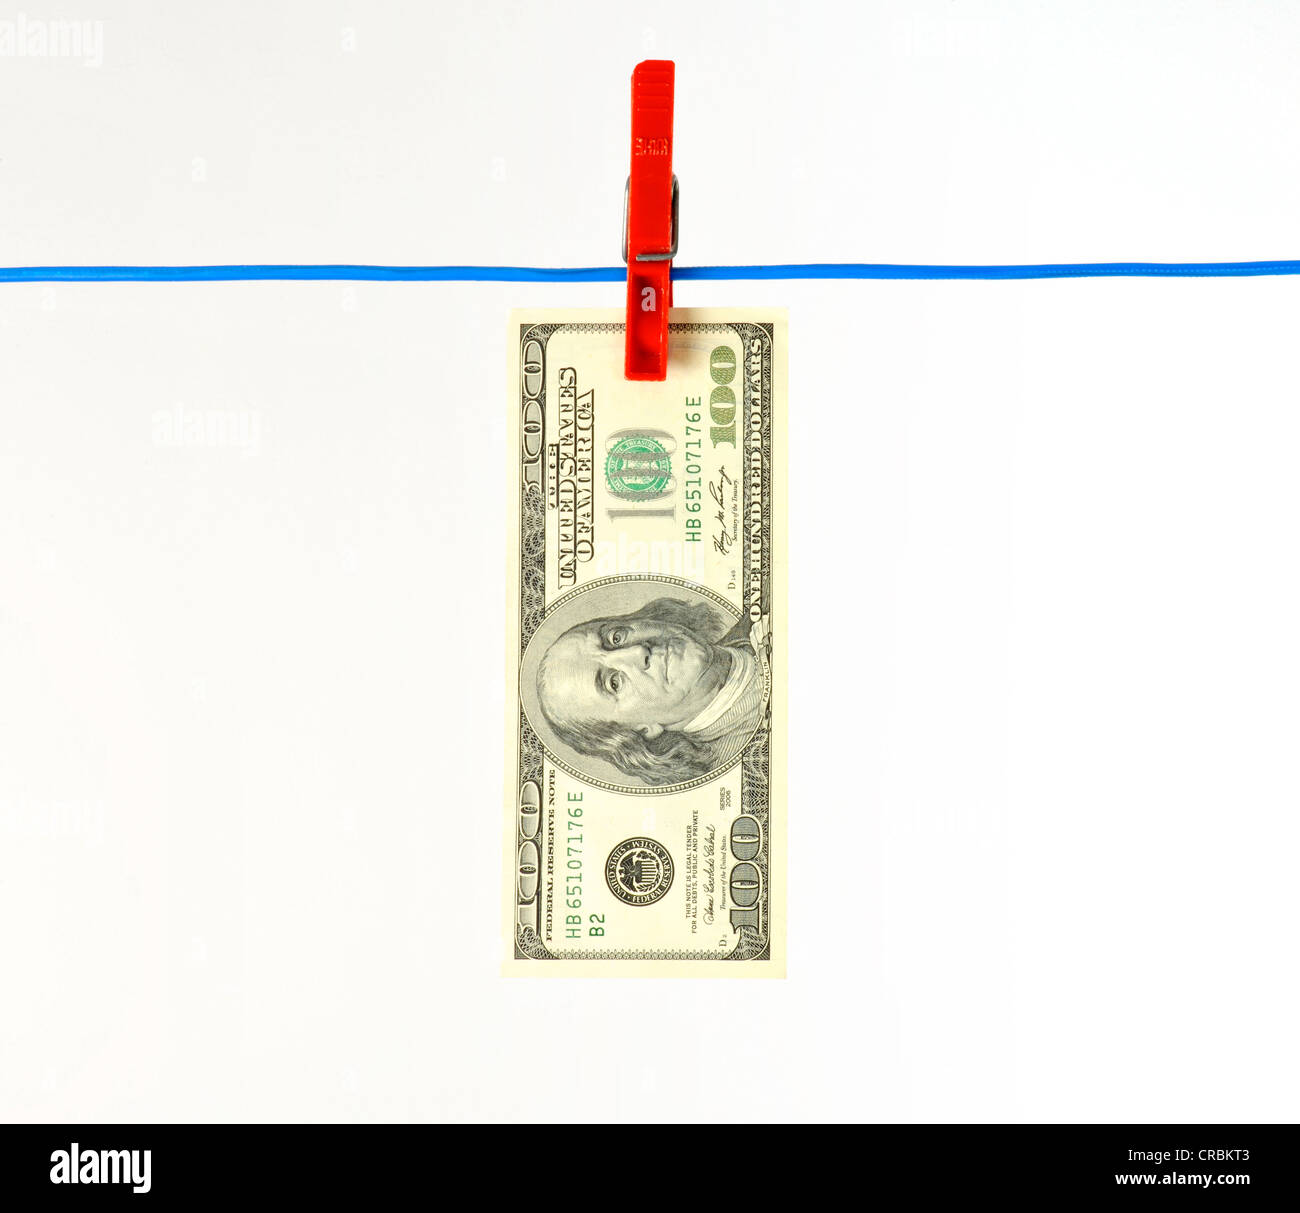 US-Dollar-Banknote auf einer Wäscheleine, symbolisches Bild für Geldwäsche, schmutziges Geld Stockfoto